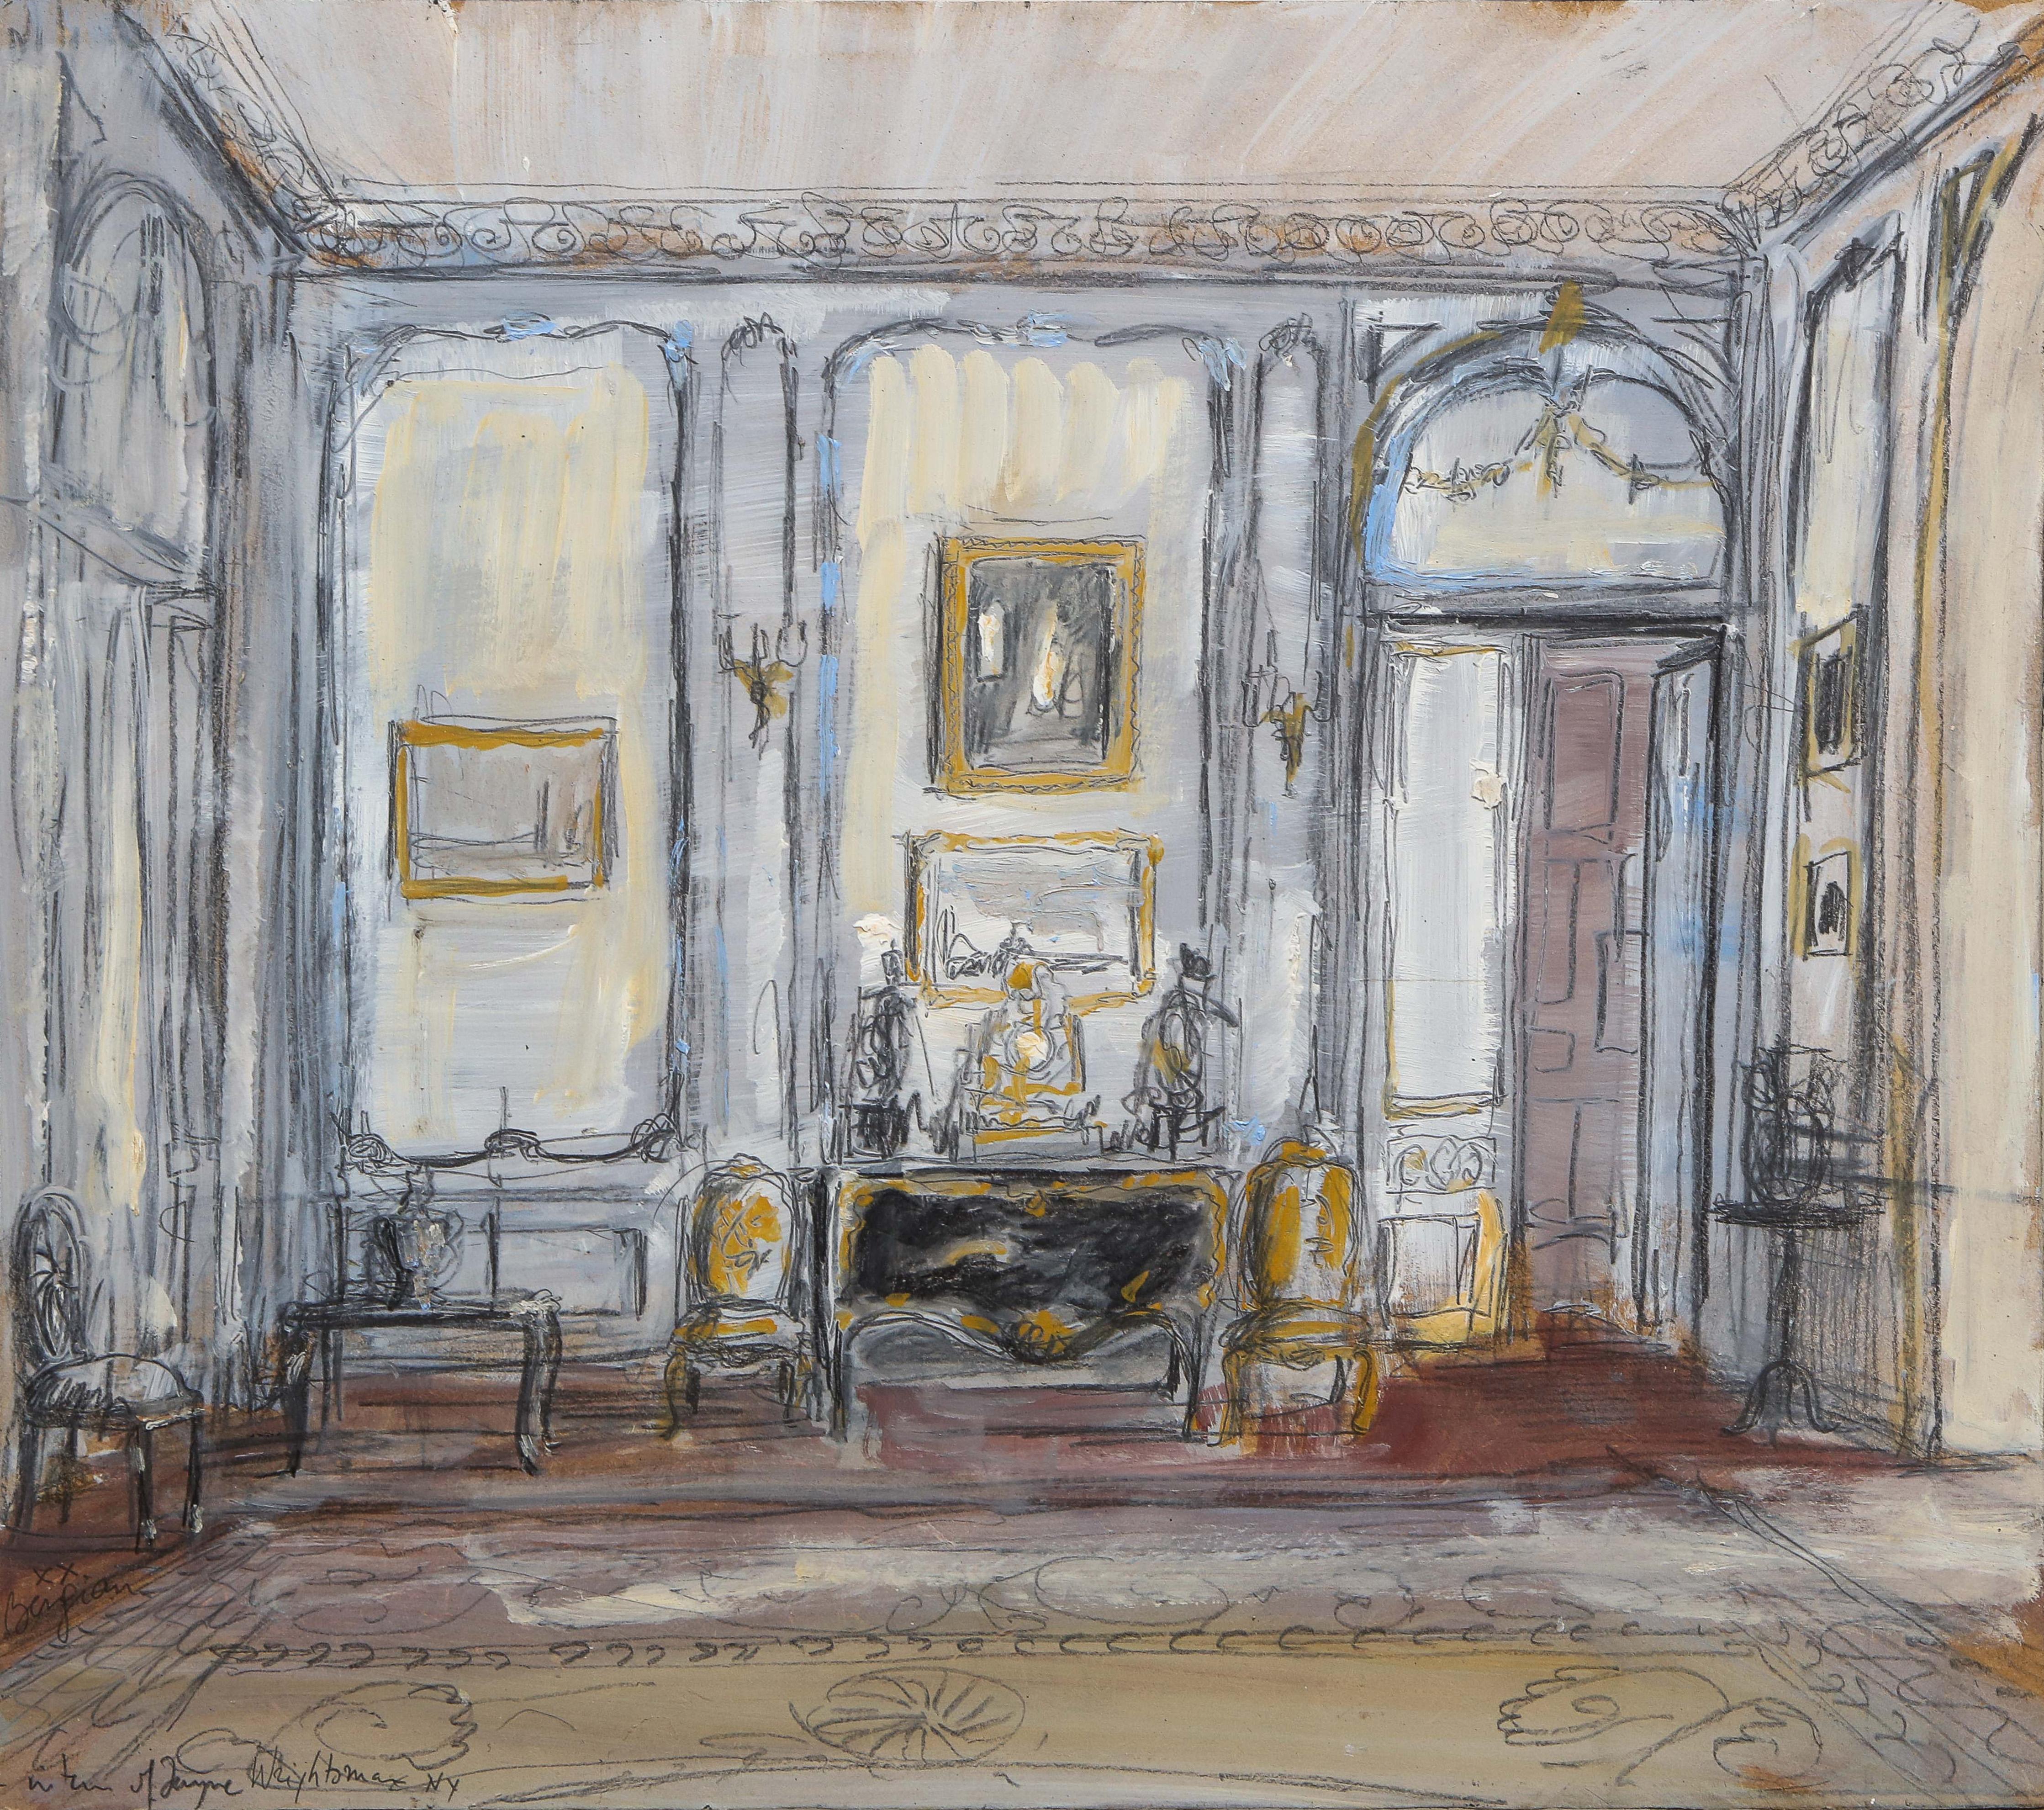 Interior Painting Pierre Bergian - Drawing Room de Jayne Wrightsman, 820 Fifth Avenue, New York